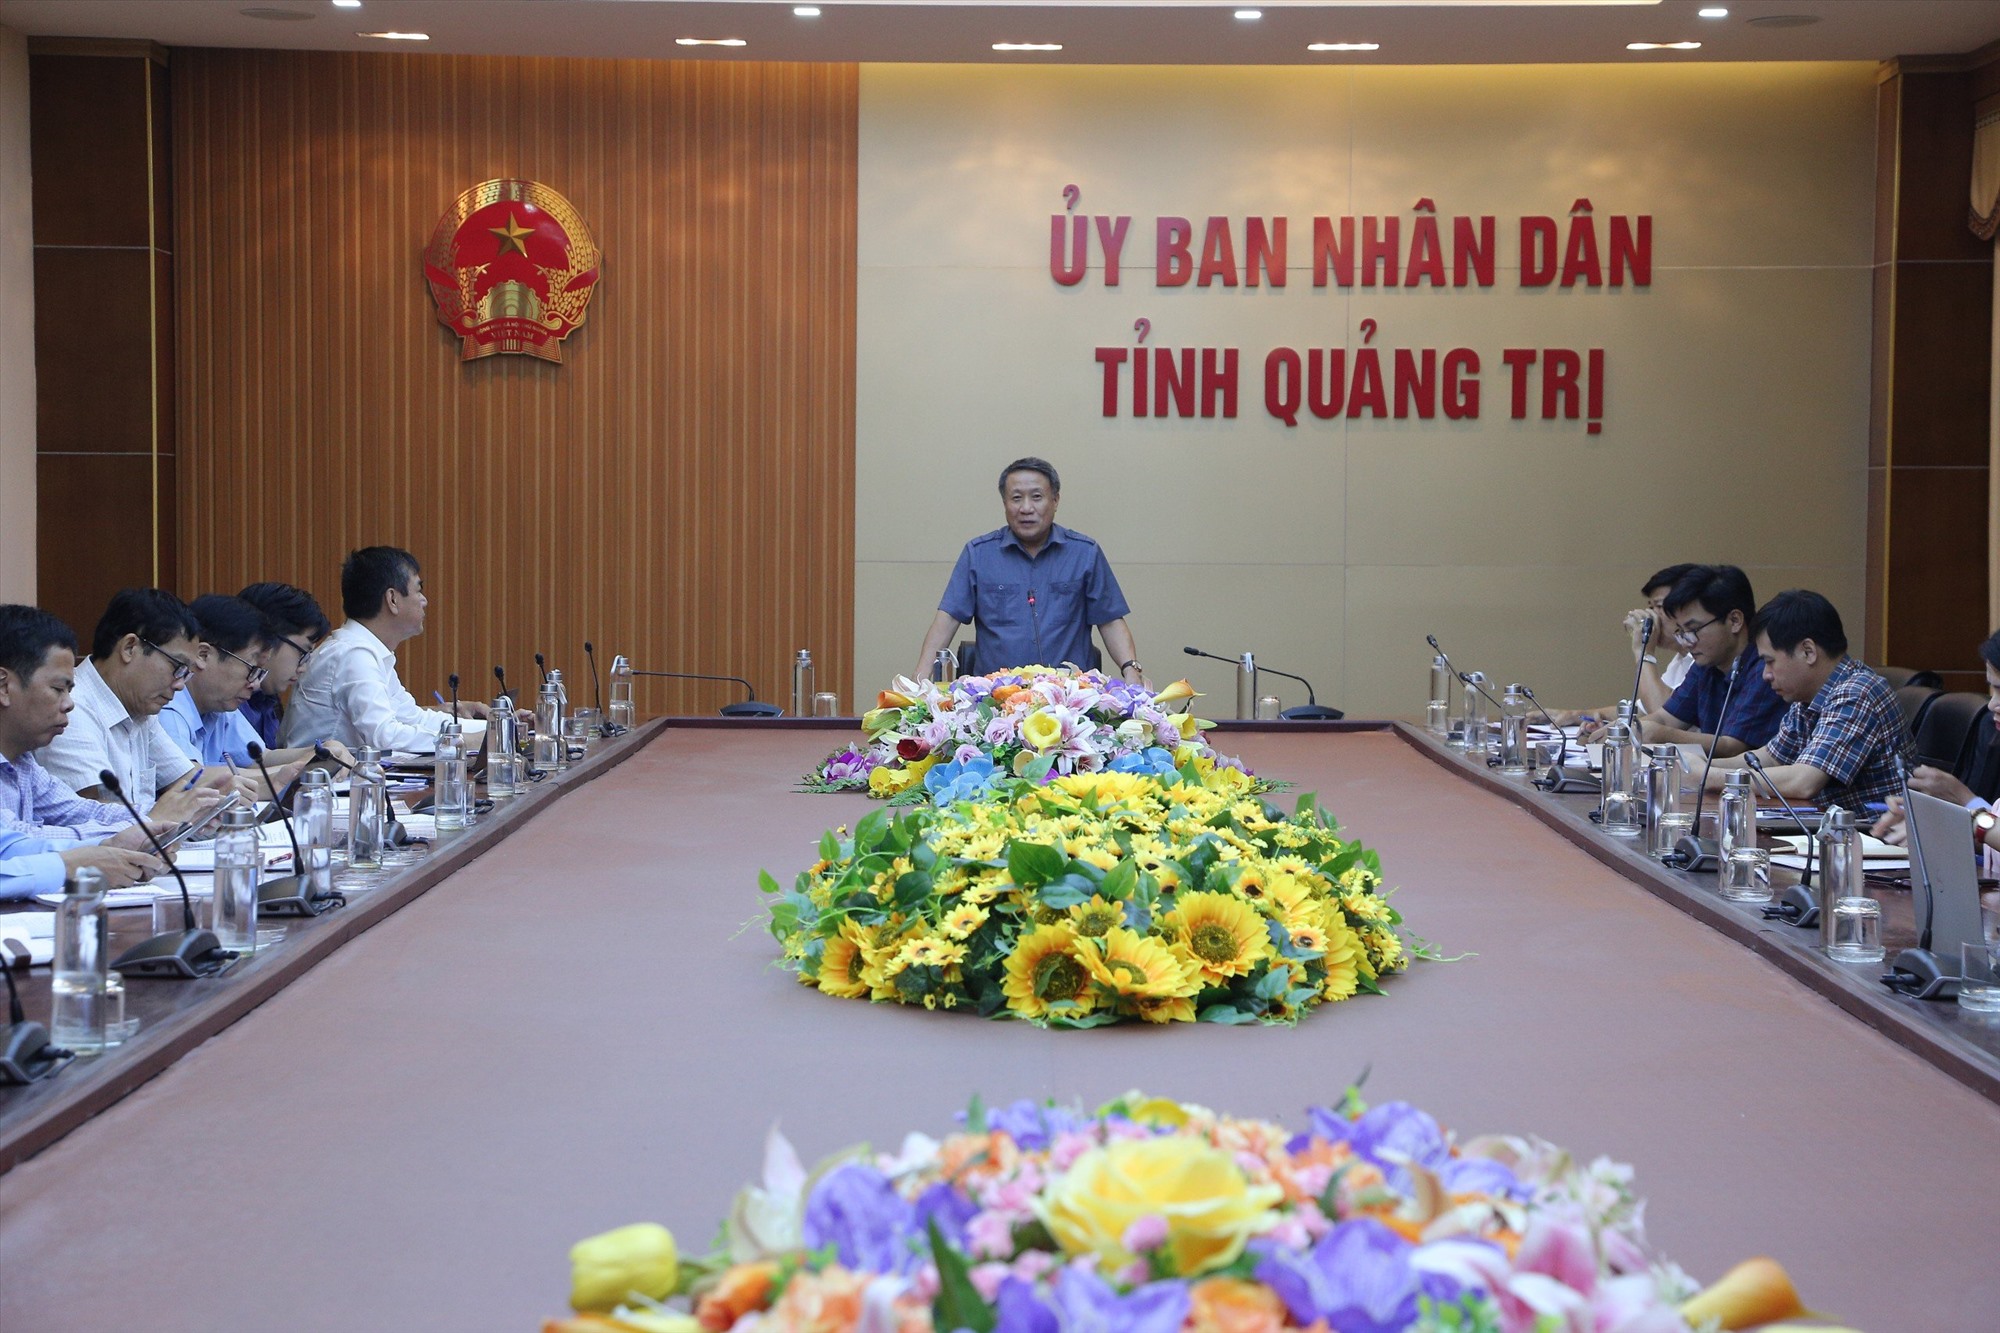 Phó Chủ tịch Thường trực UBND tỉnh Hà Sỹ Đồng phát biểu kết luận tại phiên làm việc - Ảnh: Lê Minh